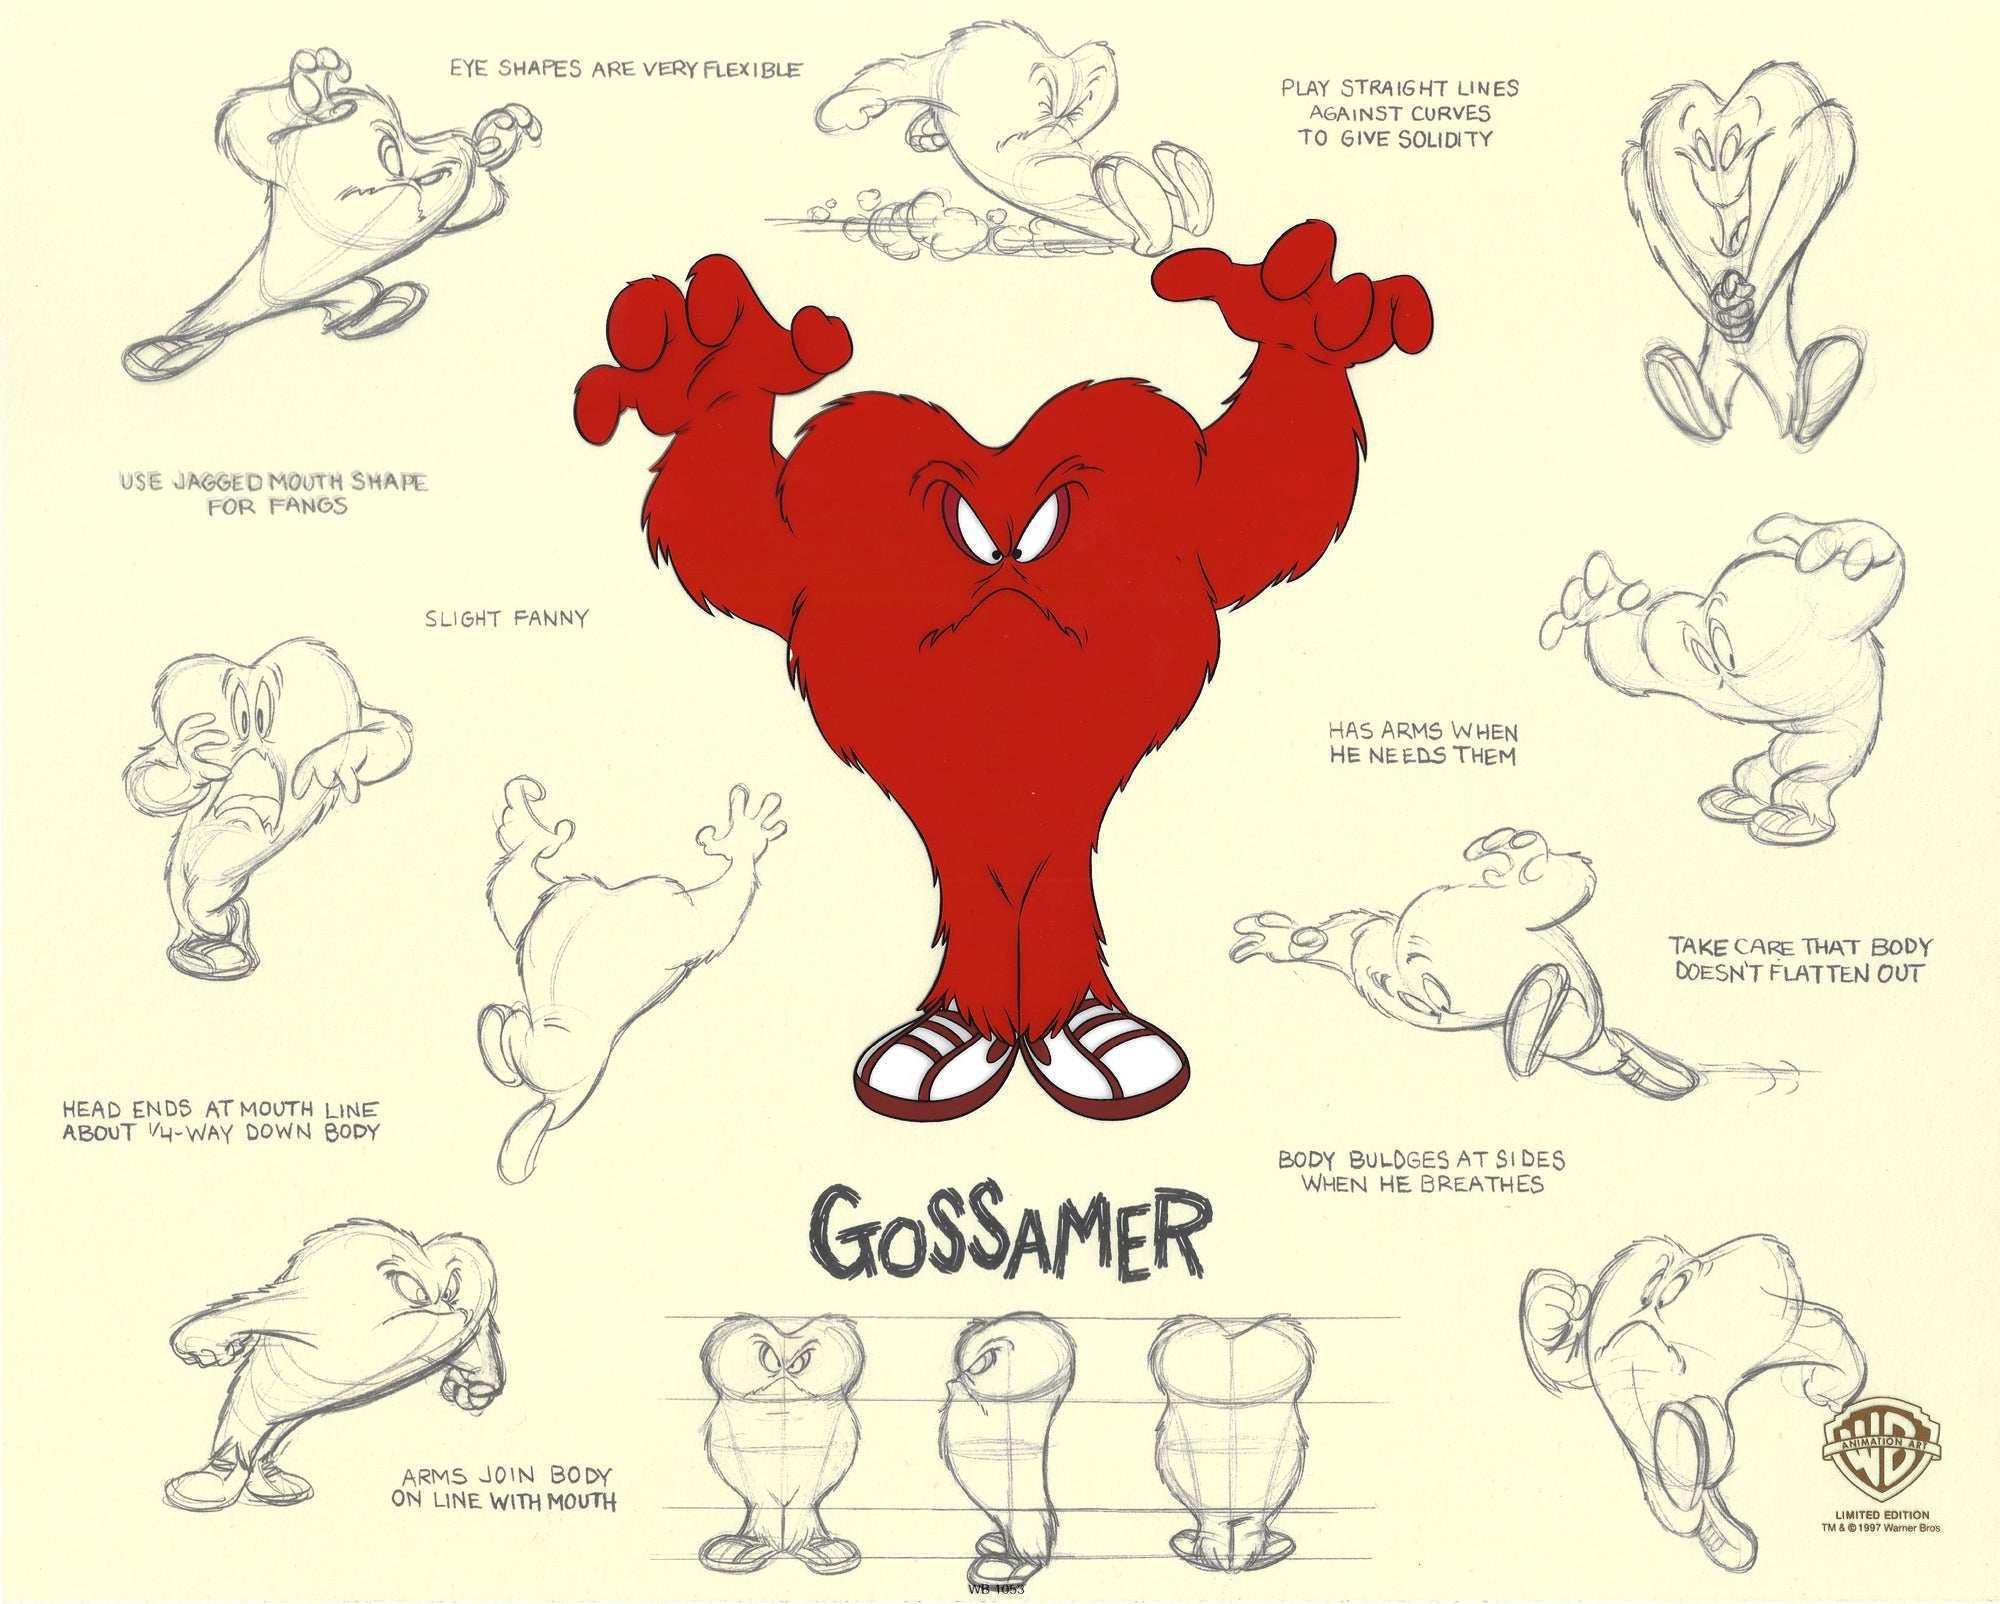 Gossamer Model Sheet - Art by Looney Tunes Studio Artists